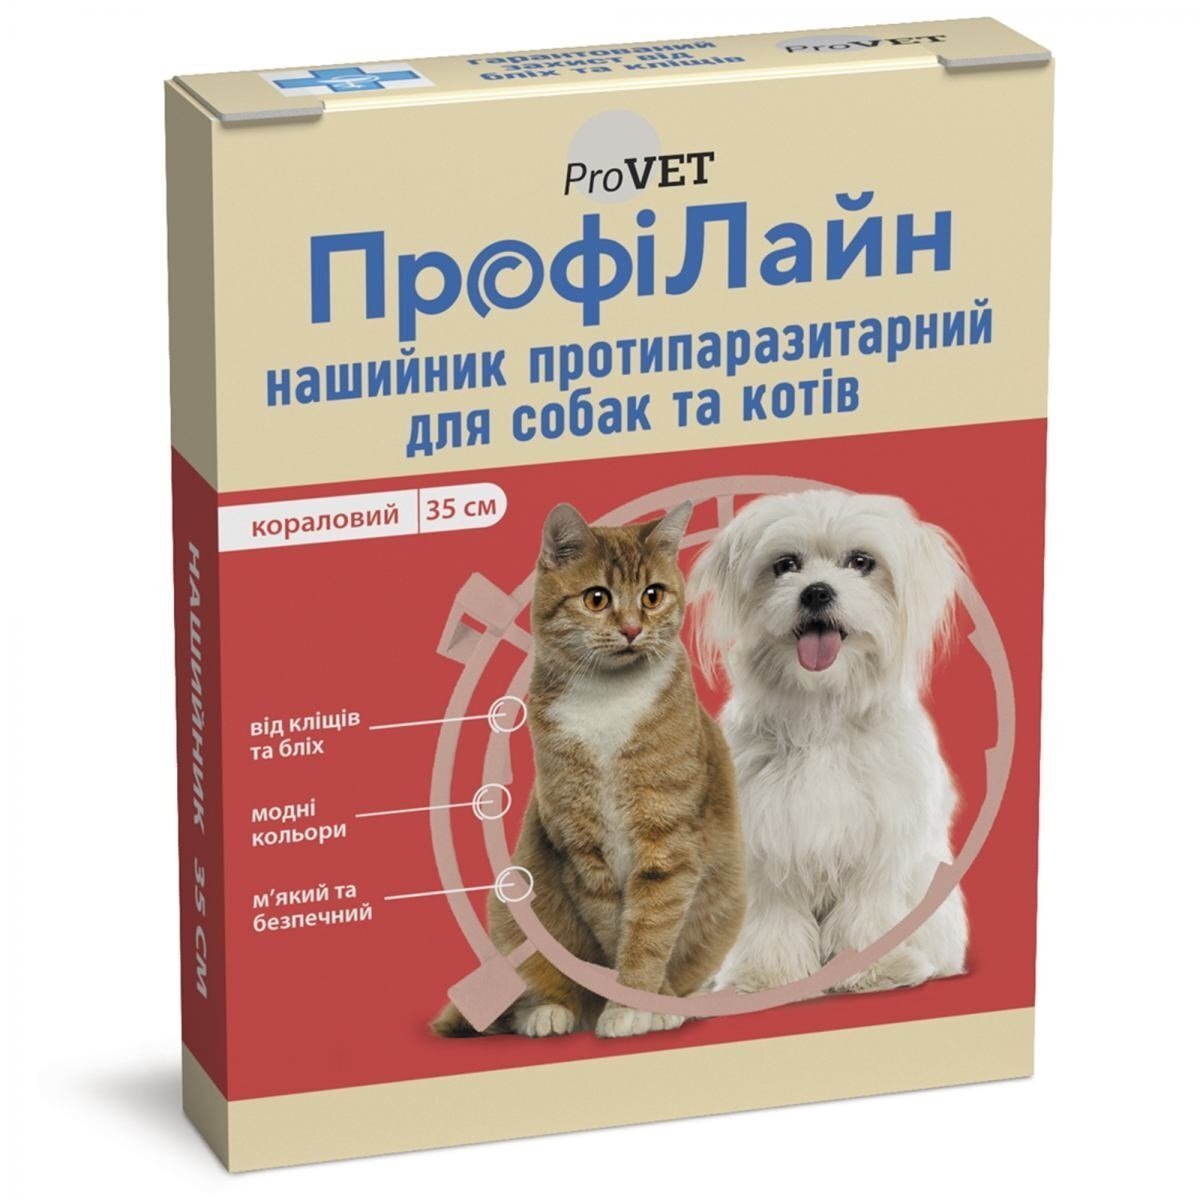 Ошейник противопаразитарный ProVET ПрофиЛайн для кошек и собак, 35 см, коралловый фото 1